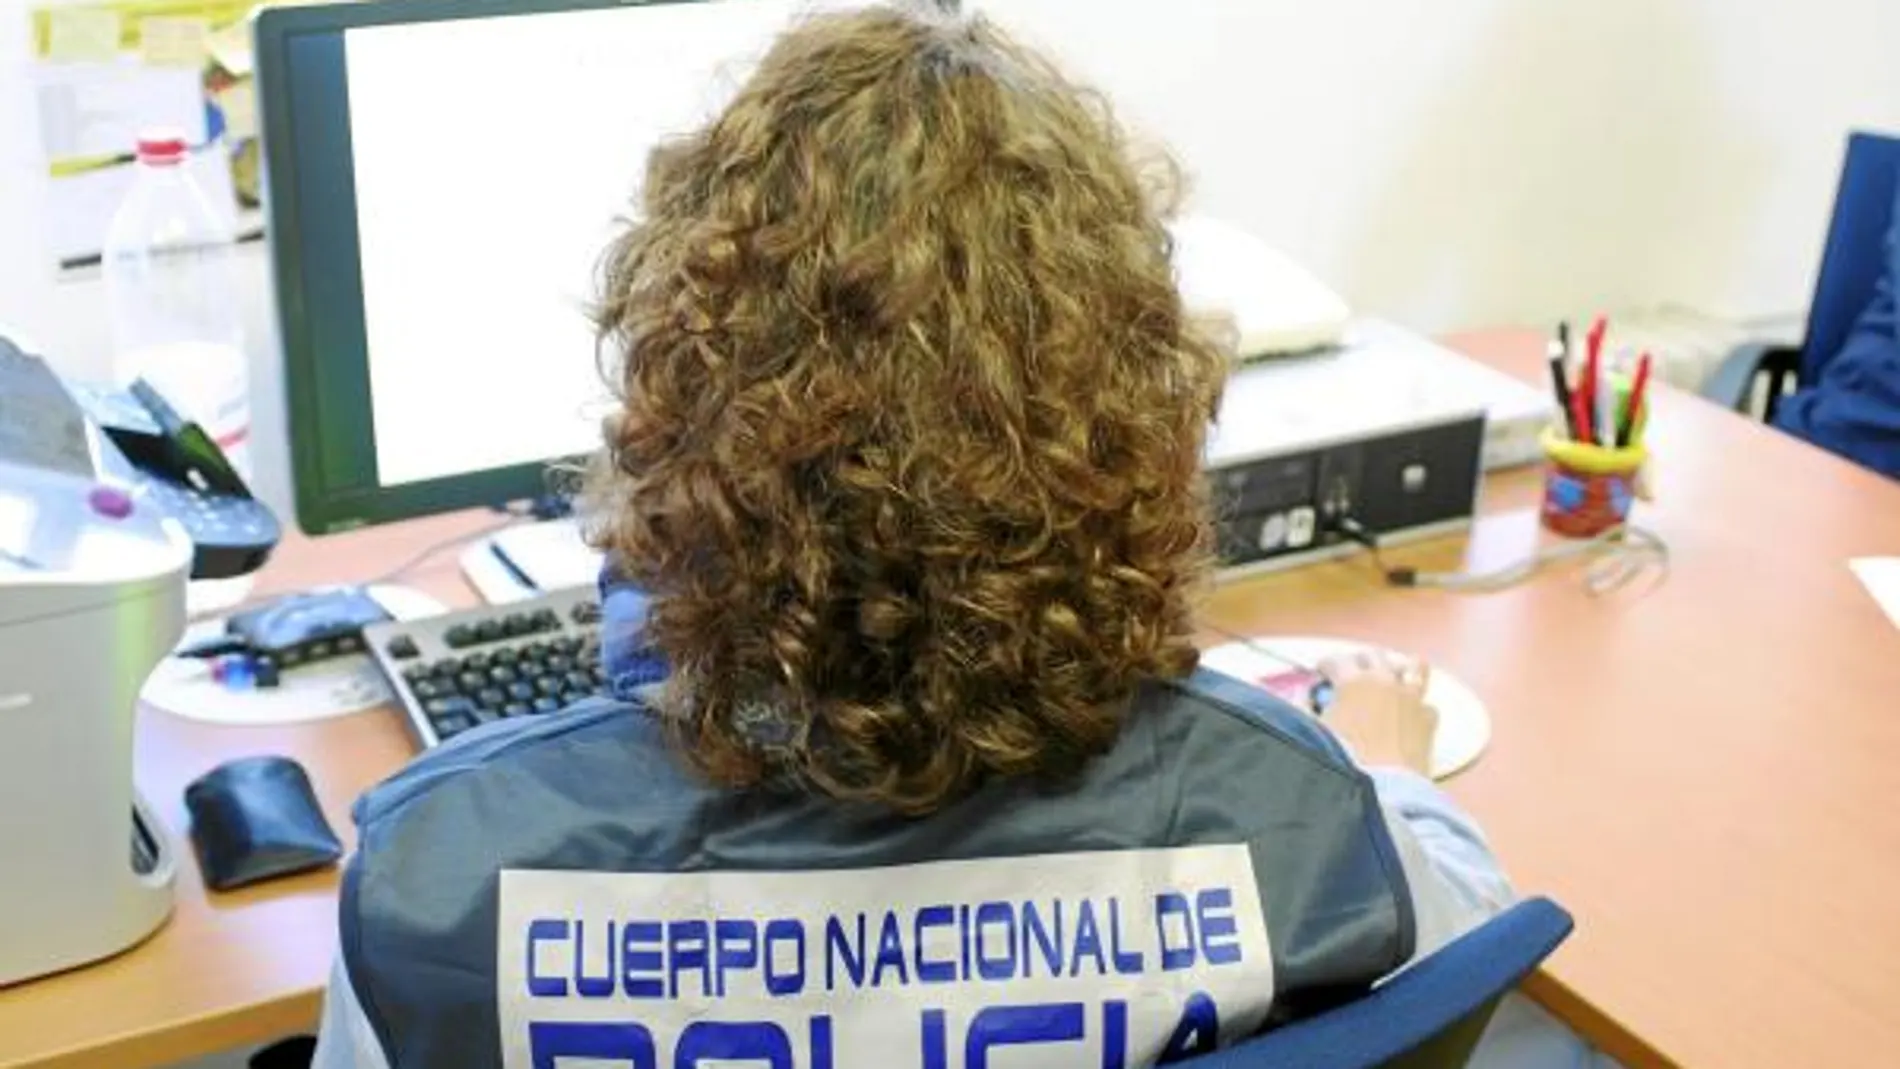 La red operaba en internet y oficinas repartidas por toda España